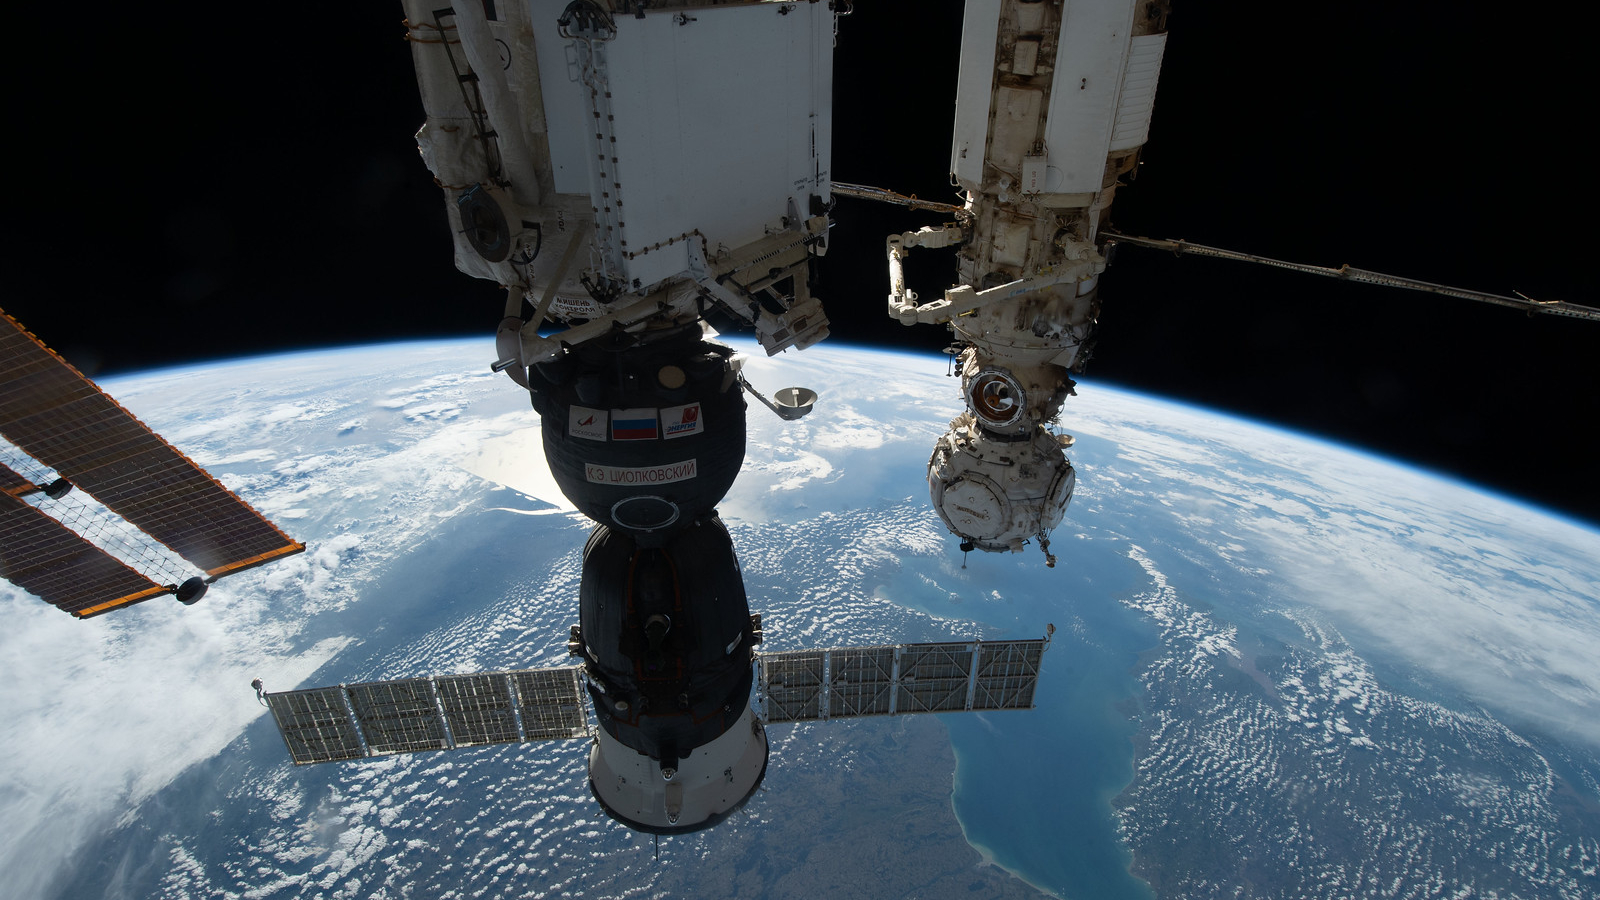 Leaky Soyuz spacecraft tests thrusters at space station, US spacewalk delayed